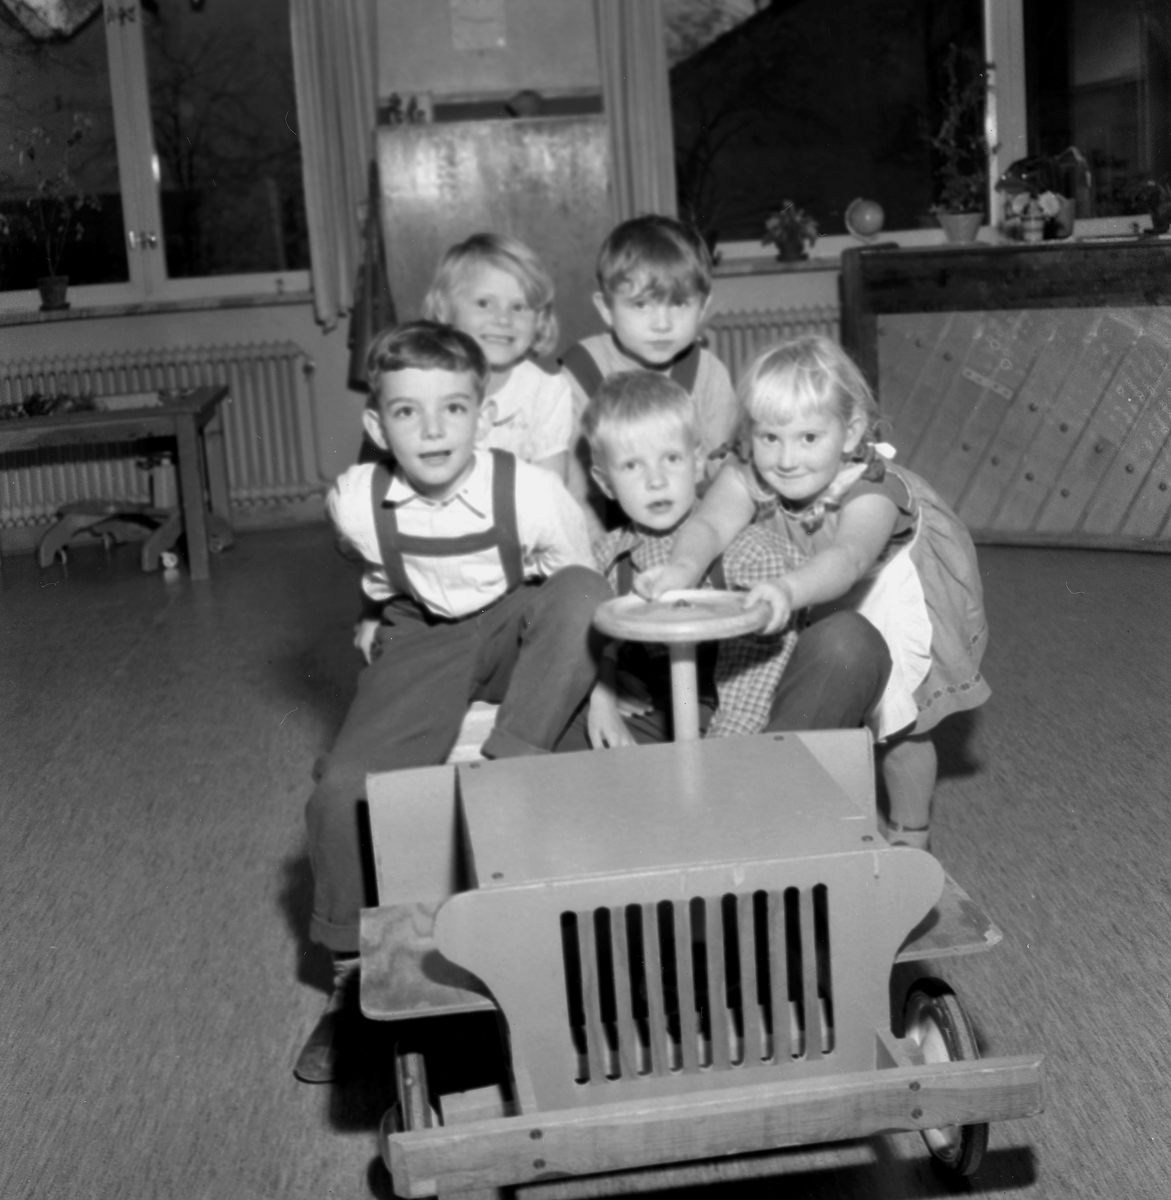 Barnträdgårdar. Bildsidan.
31 oktober 1955.